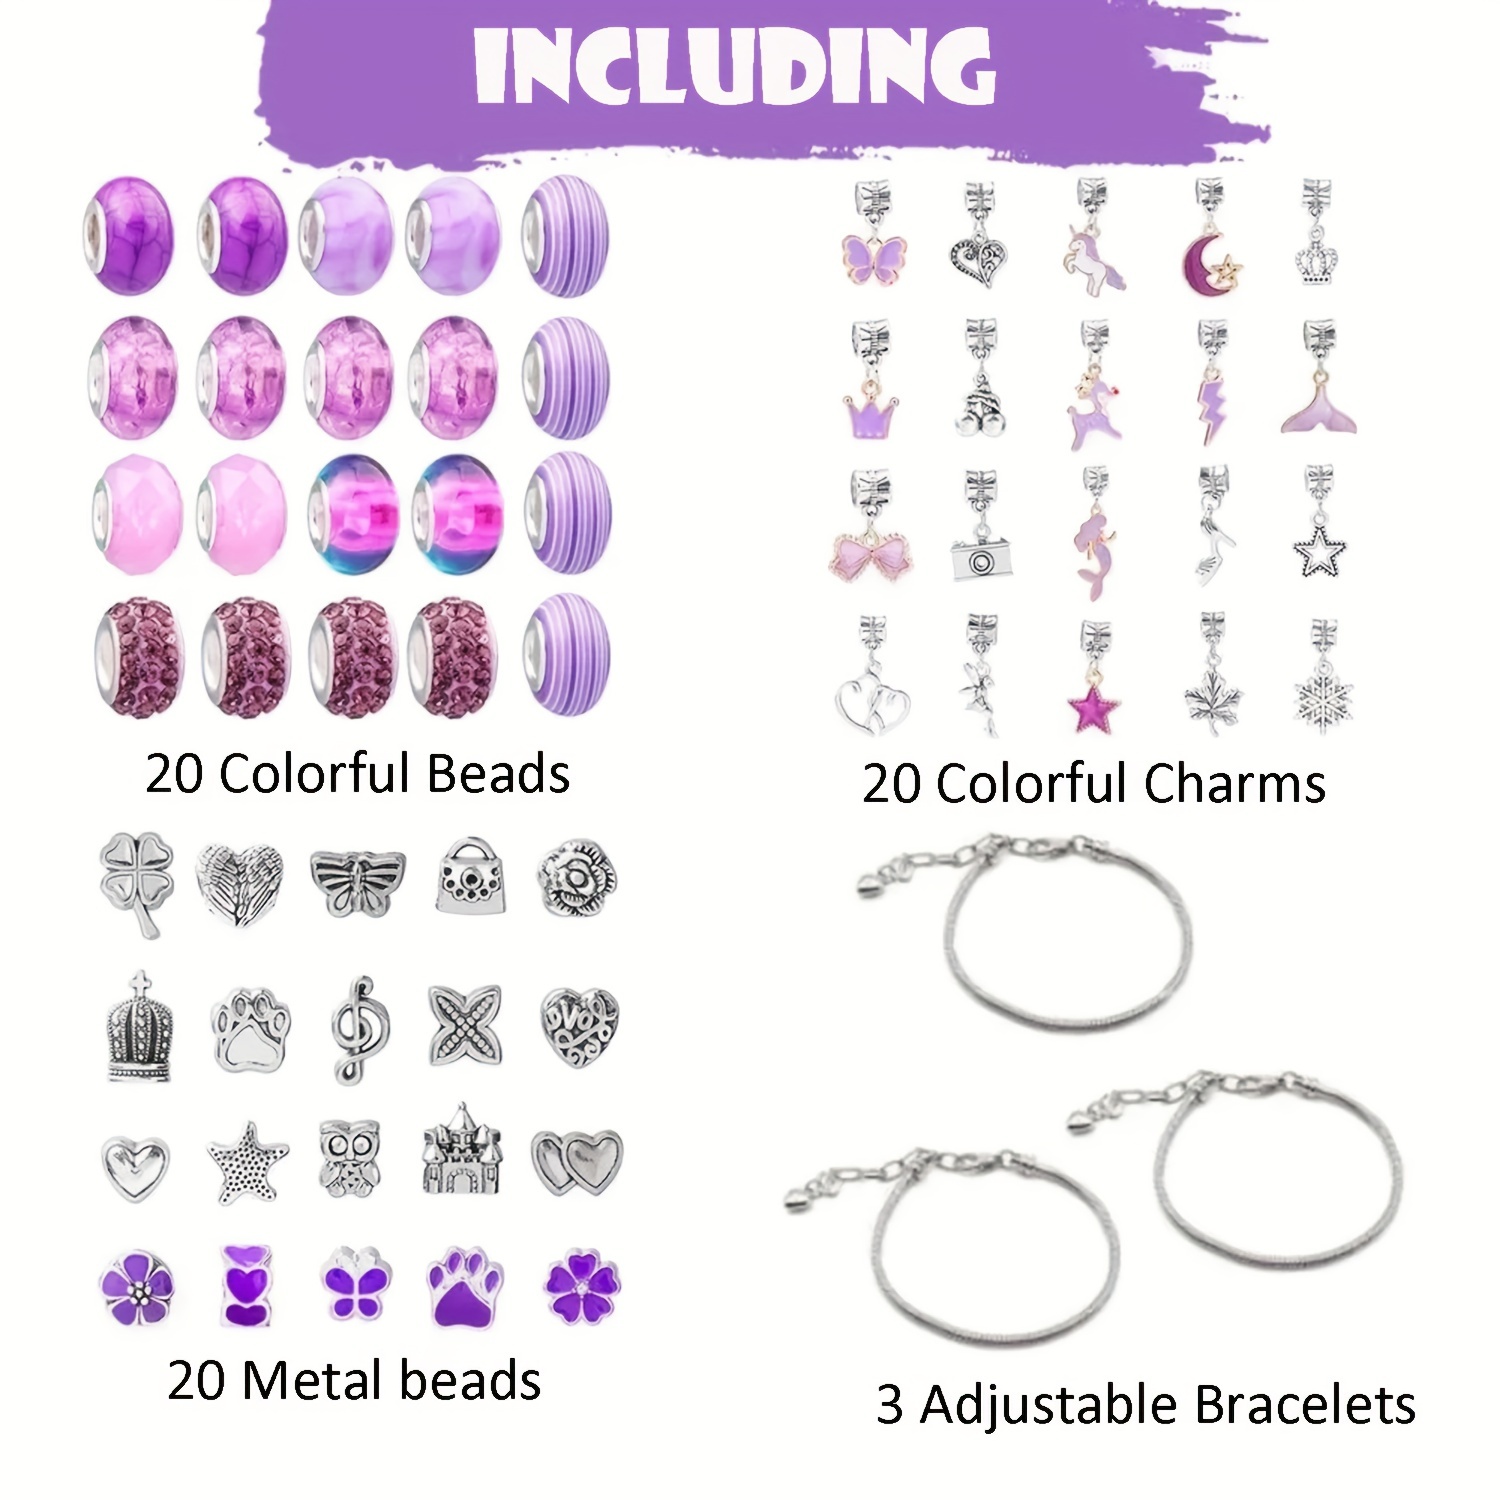 DIY Bracelet Making Kit for Girls,Charm Bracelets Kit with Beads